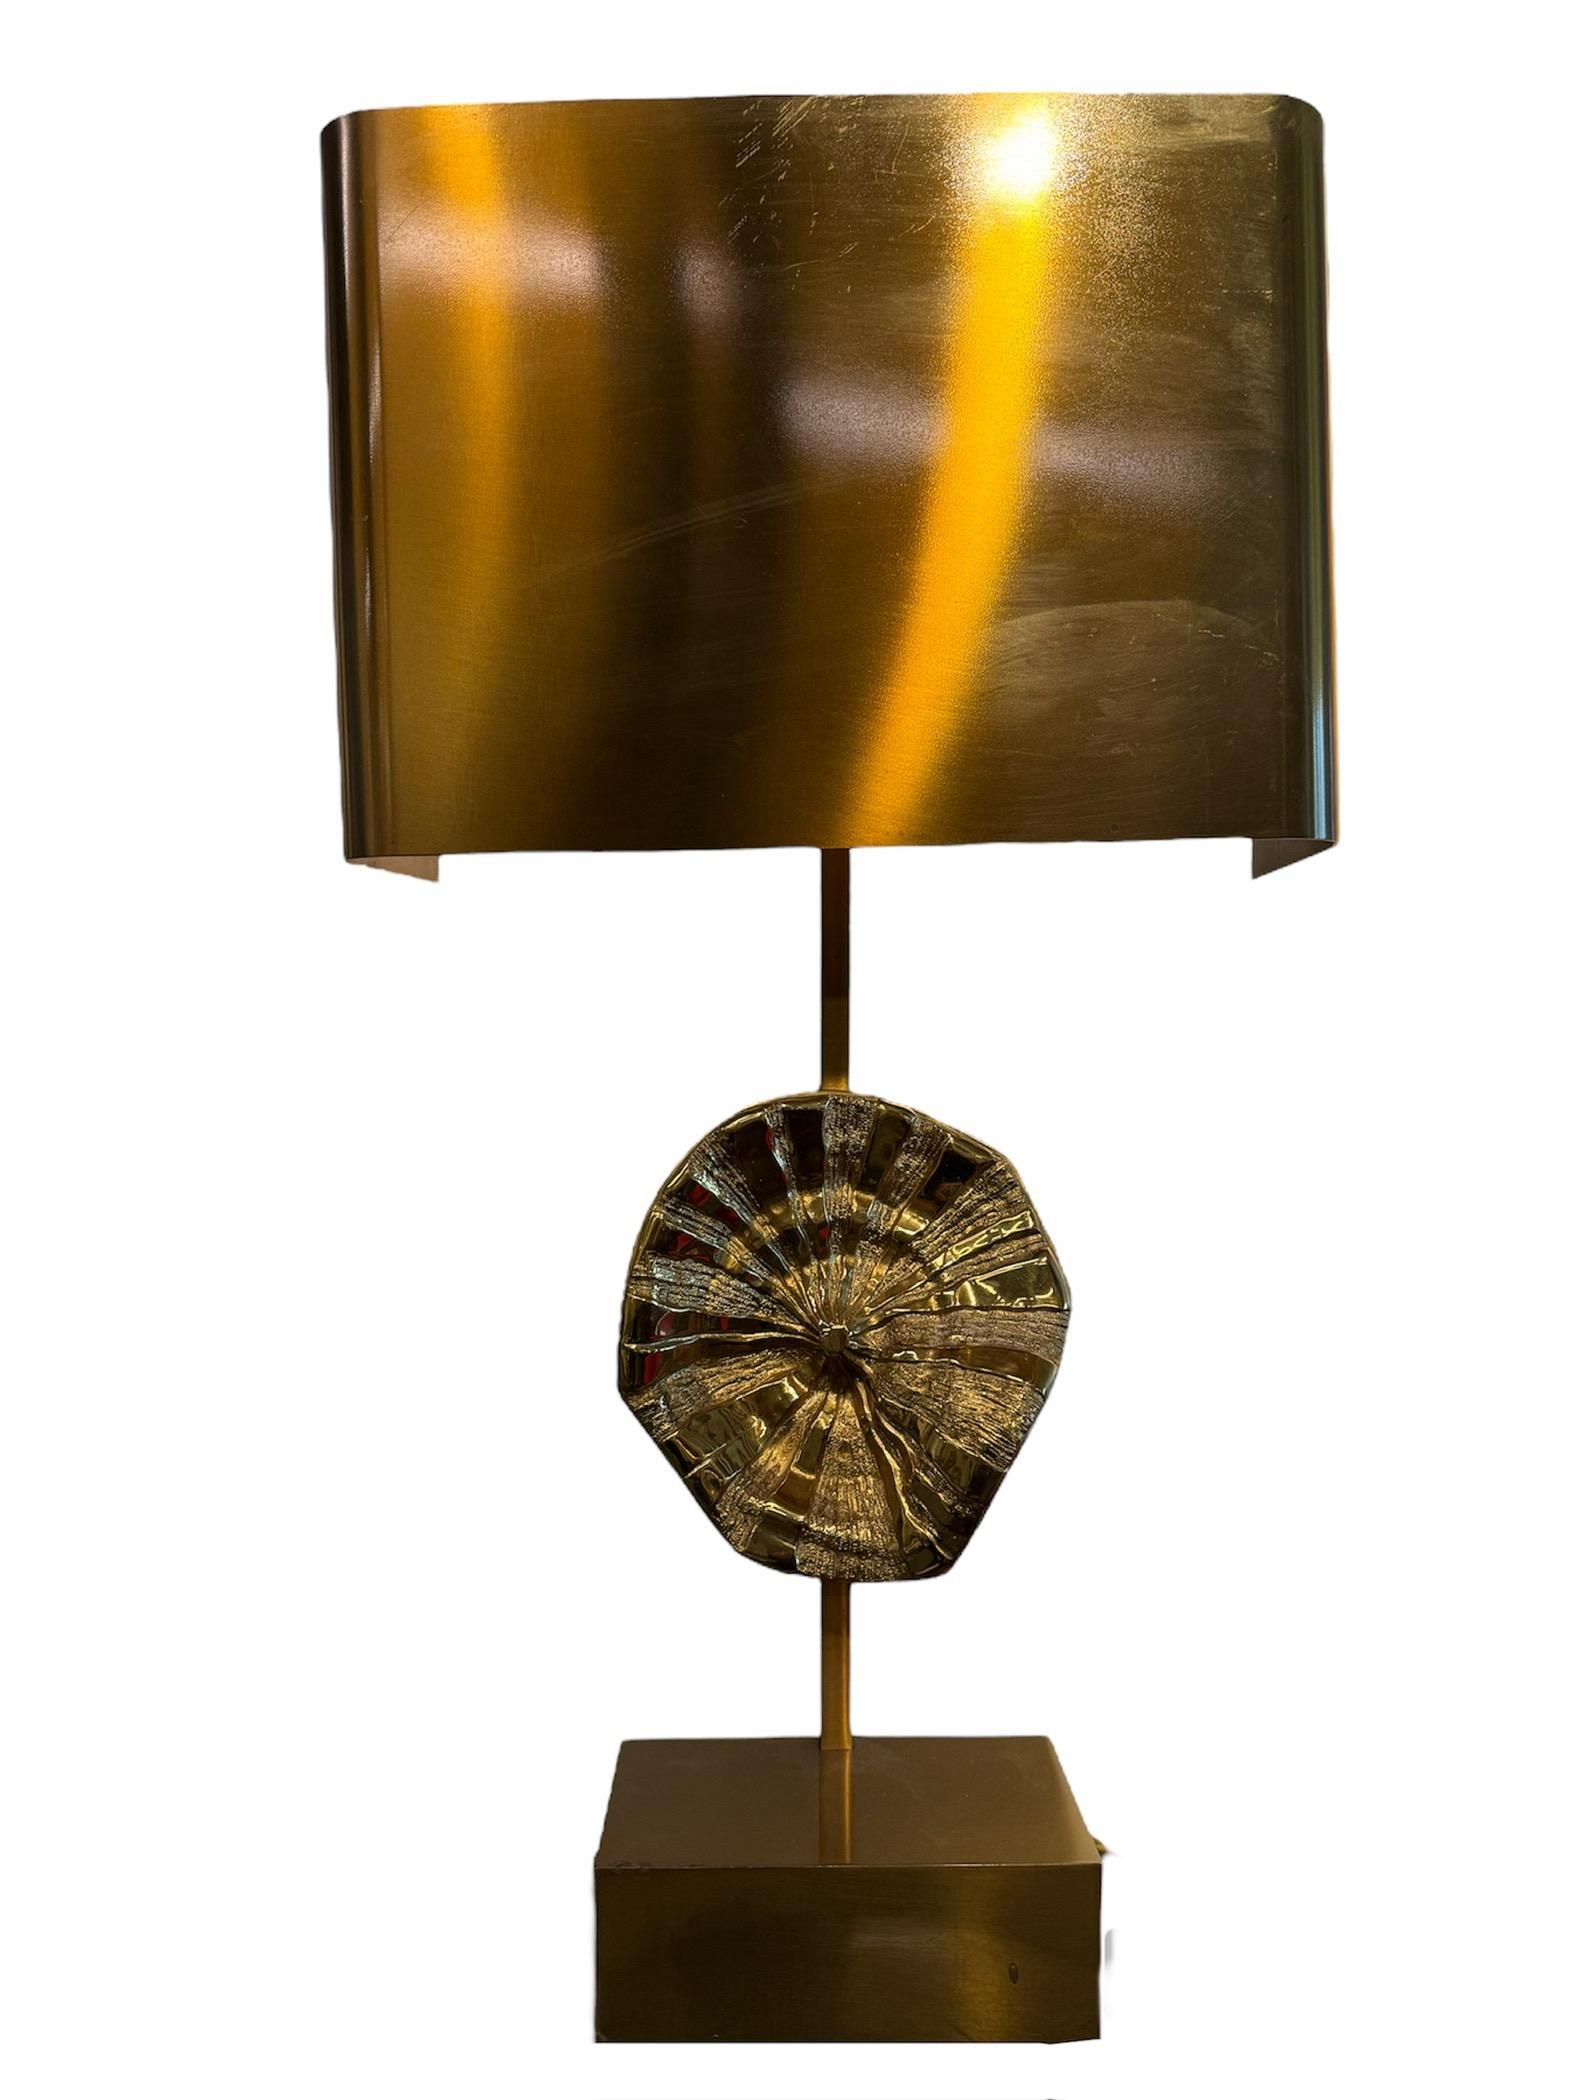 Maison Charles Schreibtischlampe aus Bronze mit zentralem Blumenmotiv
Diese exquisite Schreibtischlampe von Maison Charles verbindet klassische Eleganz mit skurrilem Charme. Dieses von der renommierten französischen Leuchtenmanufaktur gefertigte